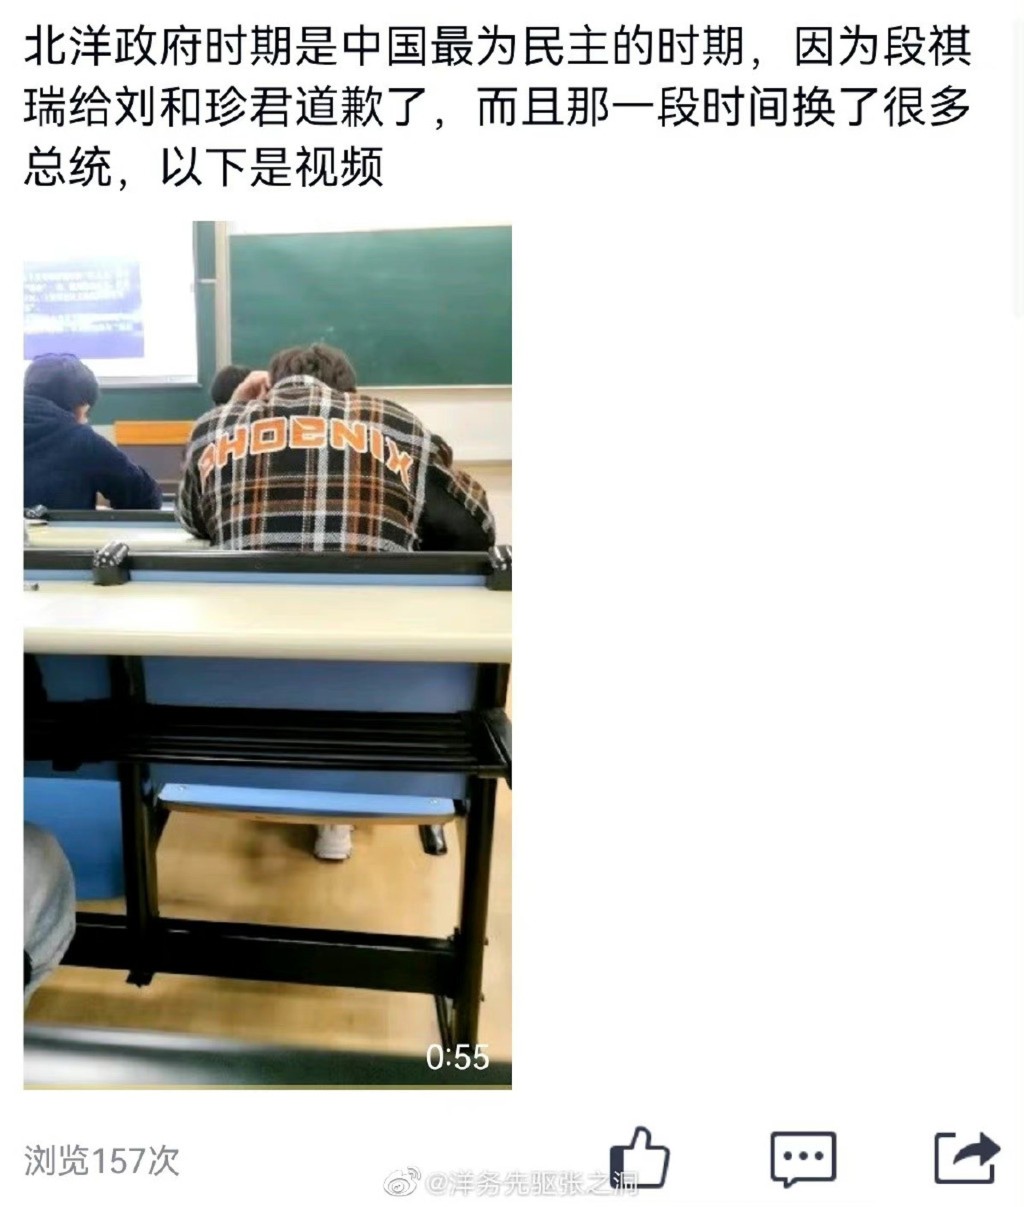 陈赛彬被指在课堂上多次发表「不当言论」。微博